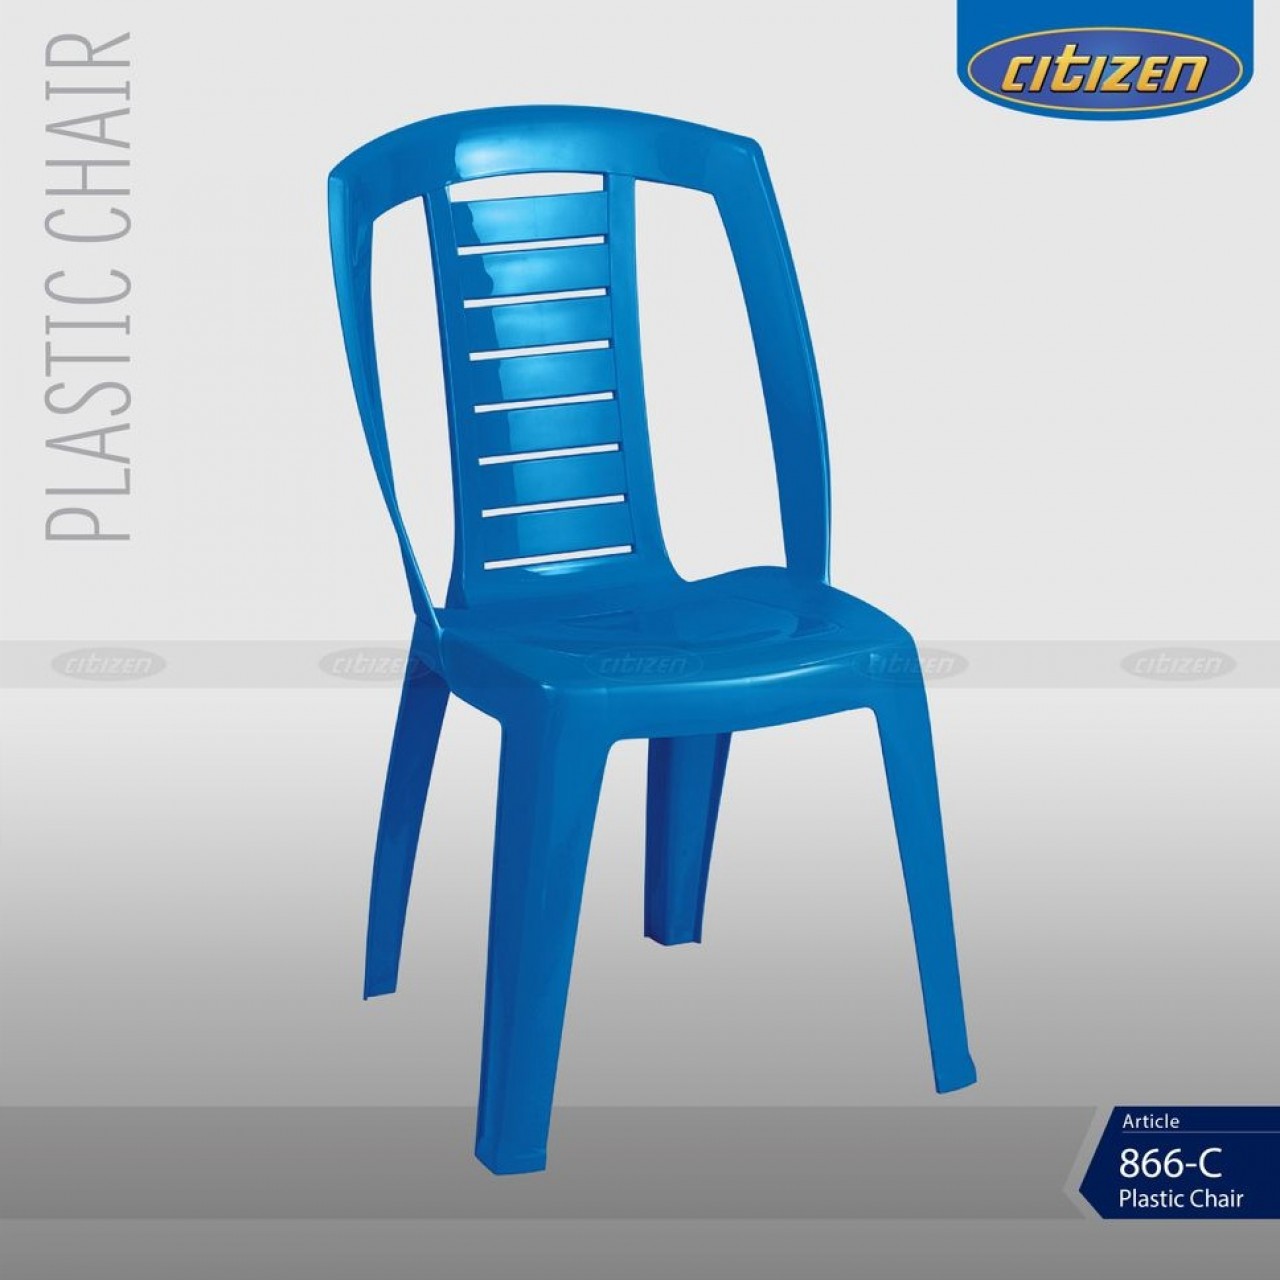 Citizen 866-C Plastic Crystal & Regular Chair - Indoor & Outdoor Furniture